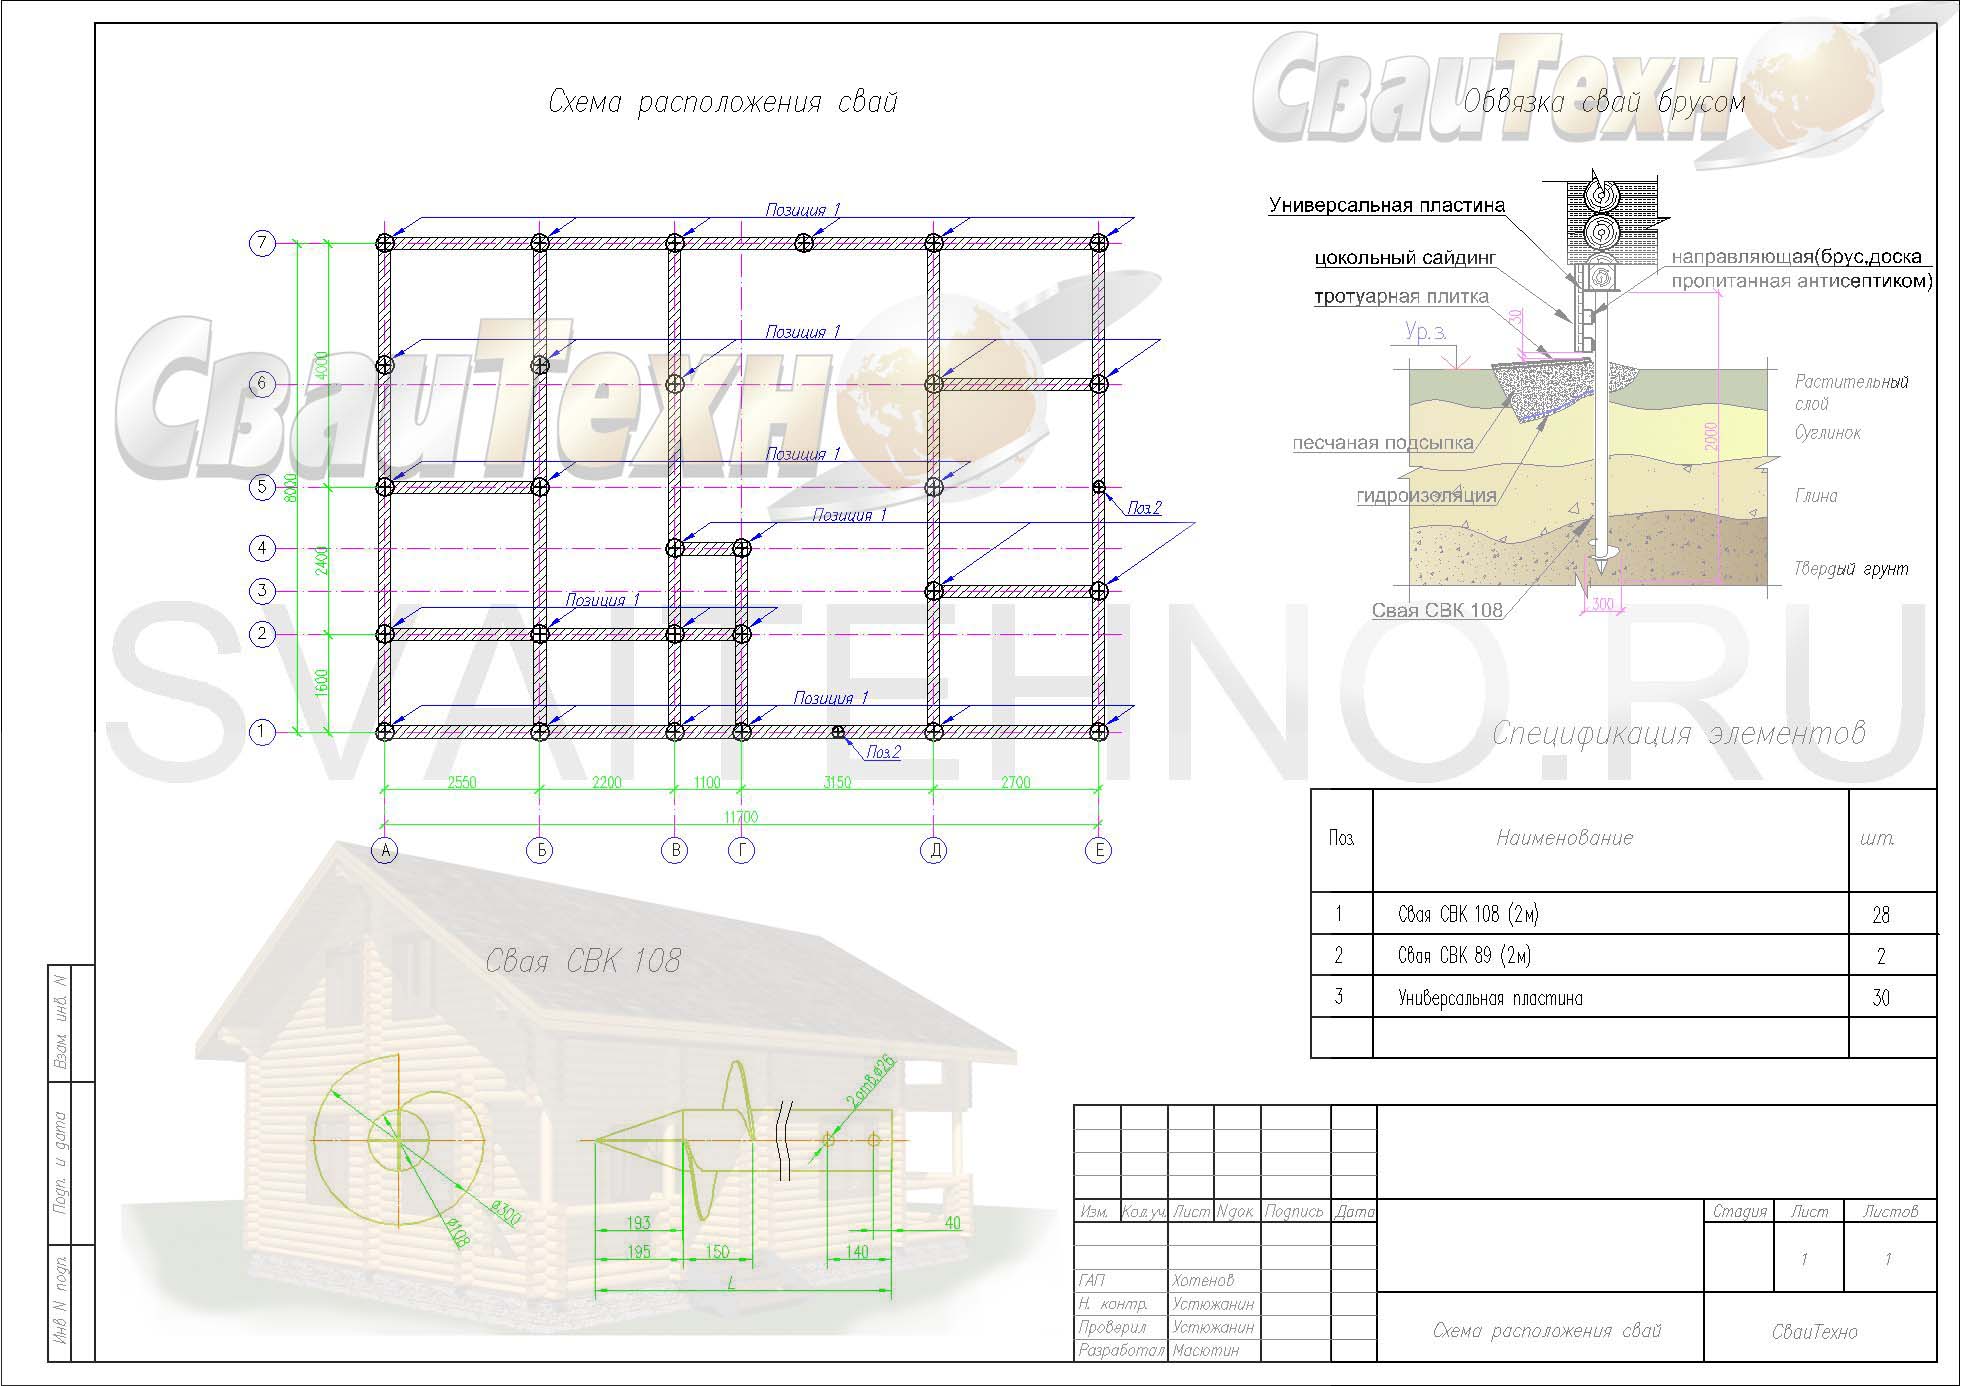 Схема расположения свай для строительства жилого дома с мансардным этажом